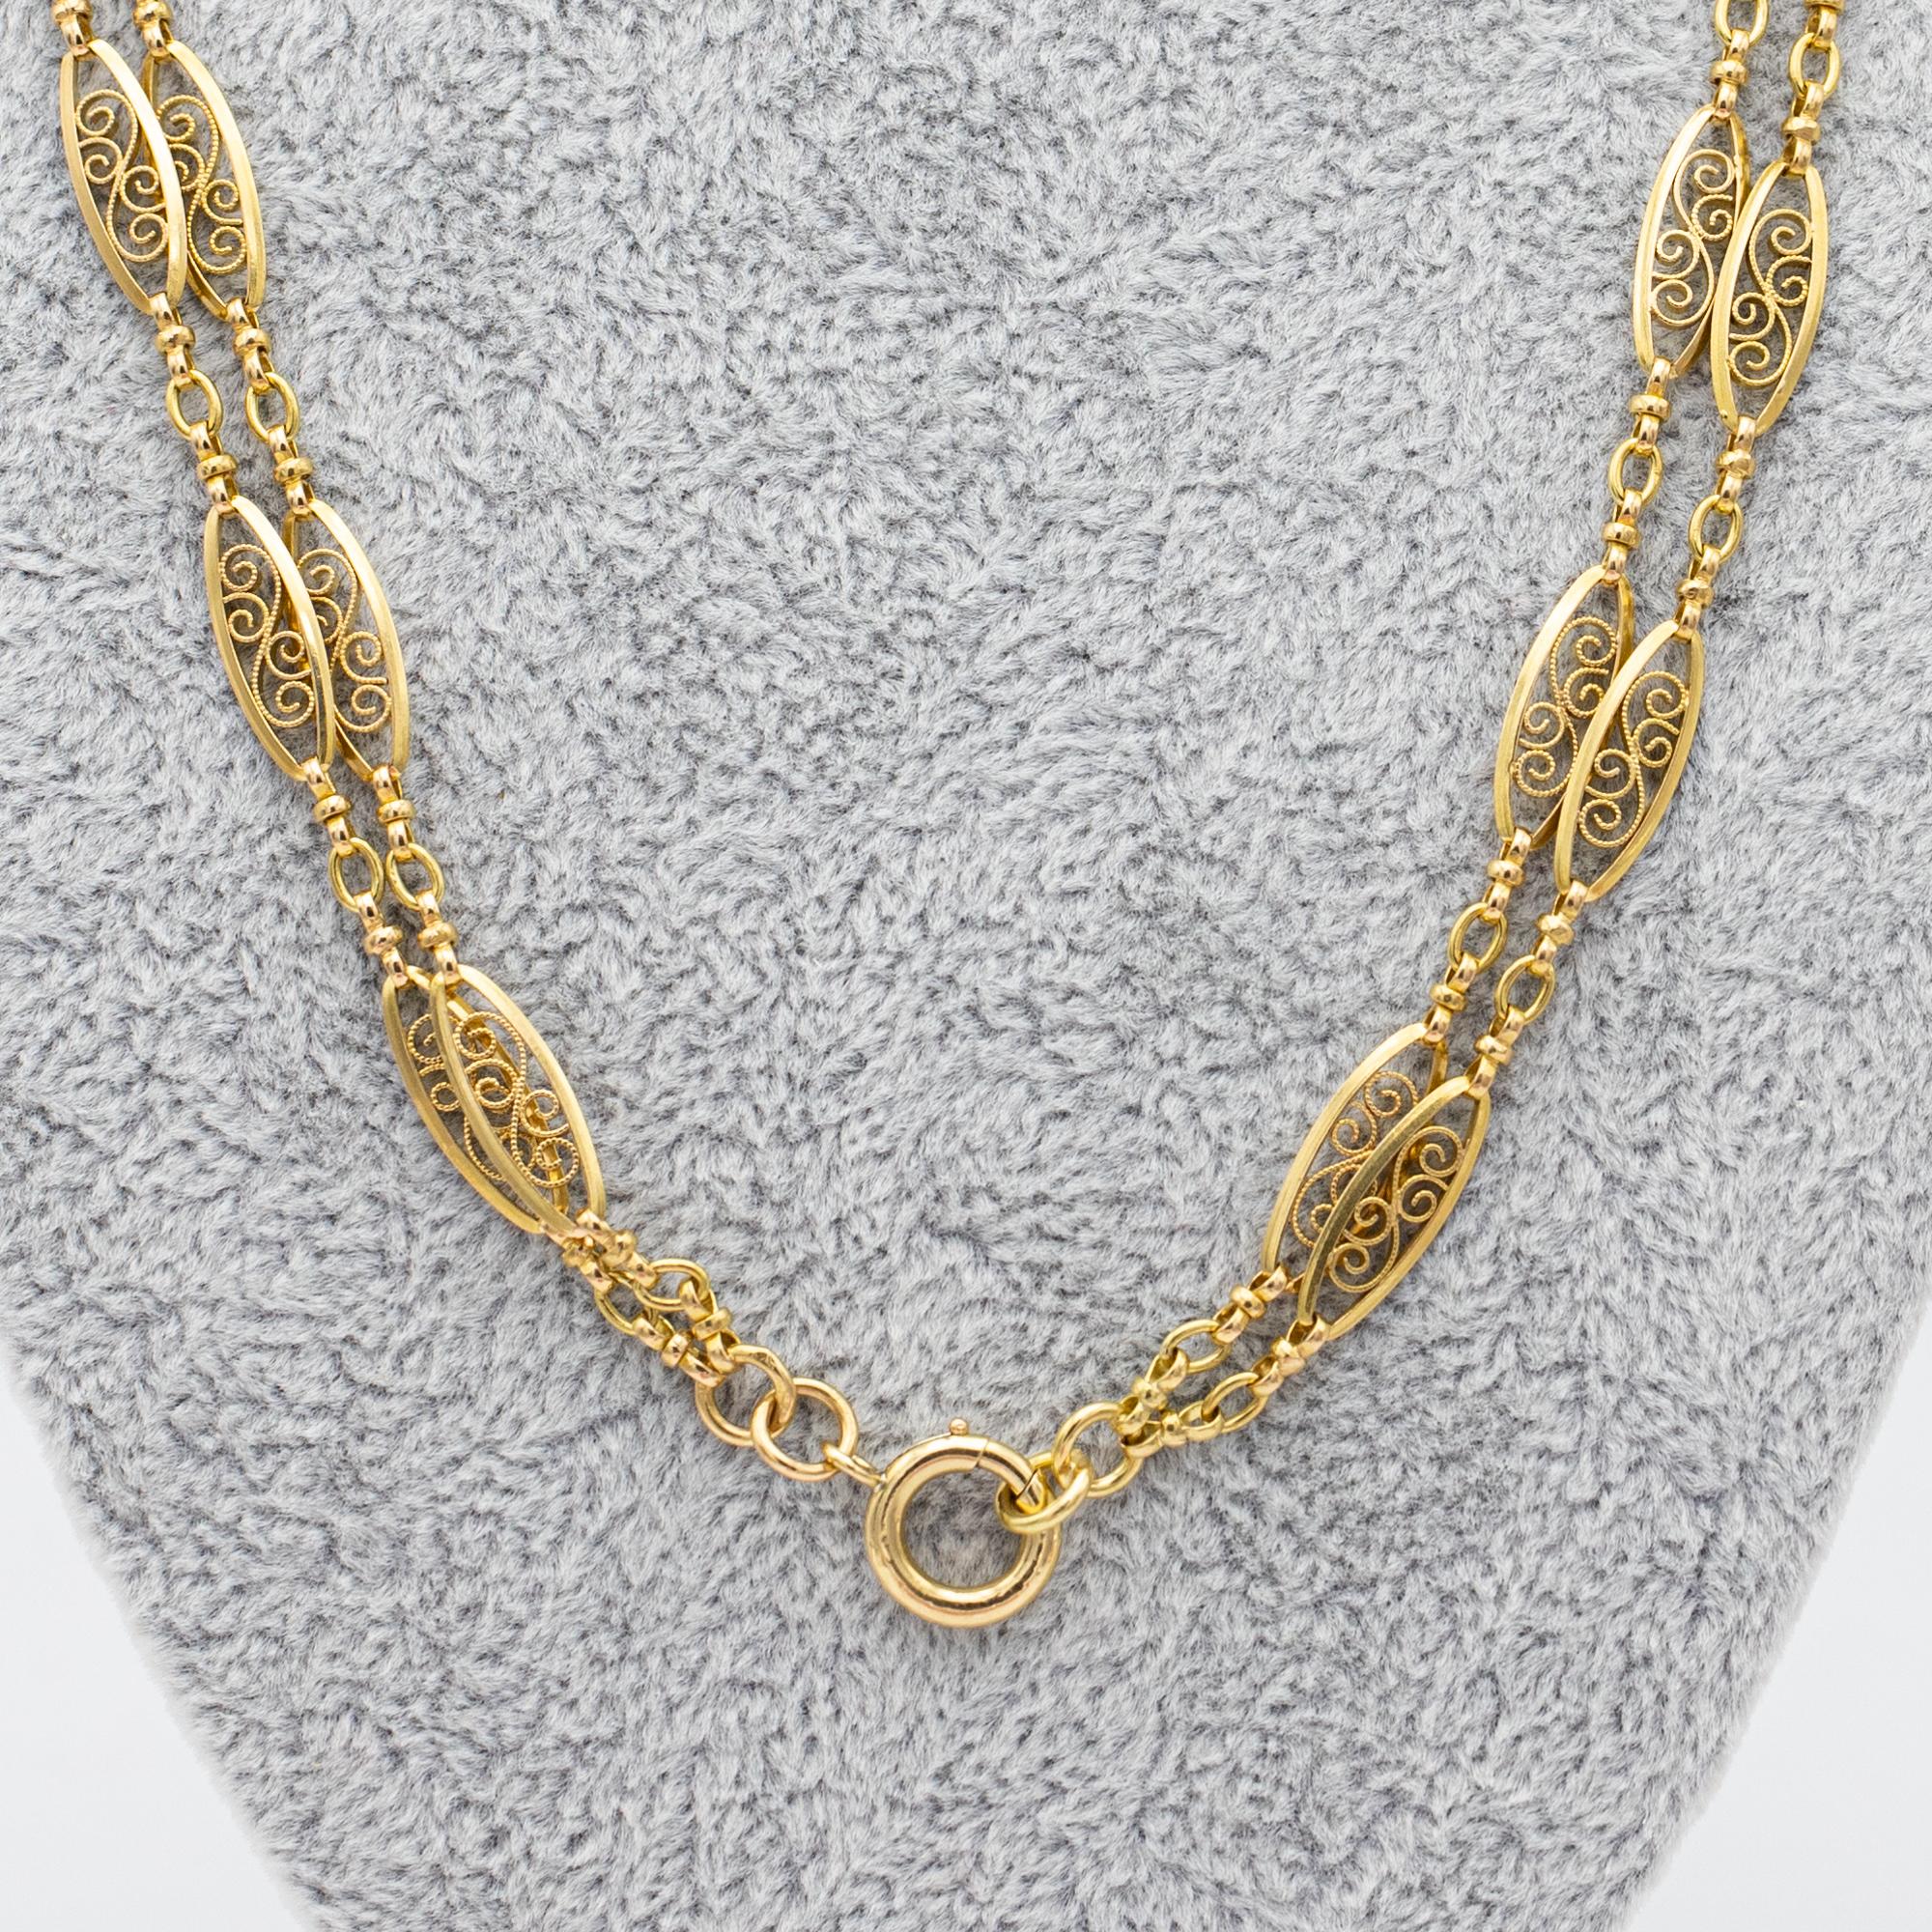 Antique 18k gold Sautoir necklace, 155cm long guard, Victorian double rope chain 9